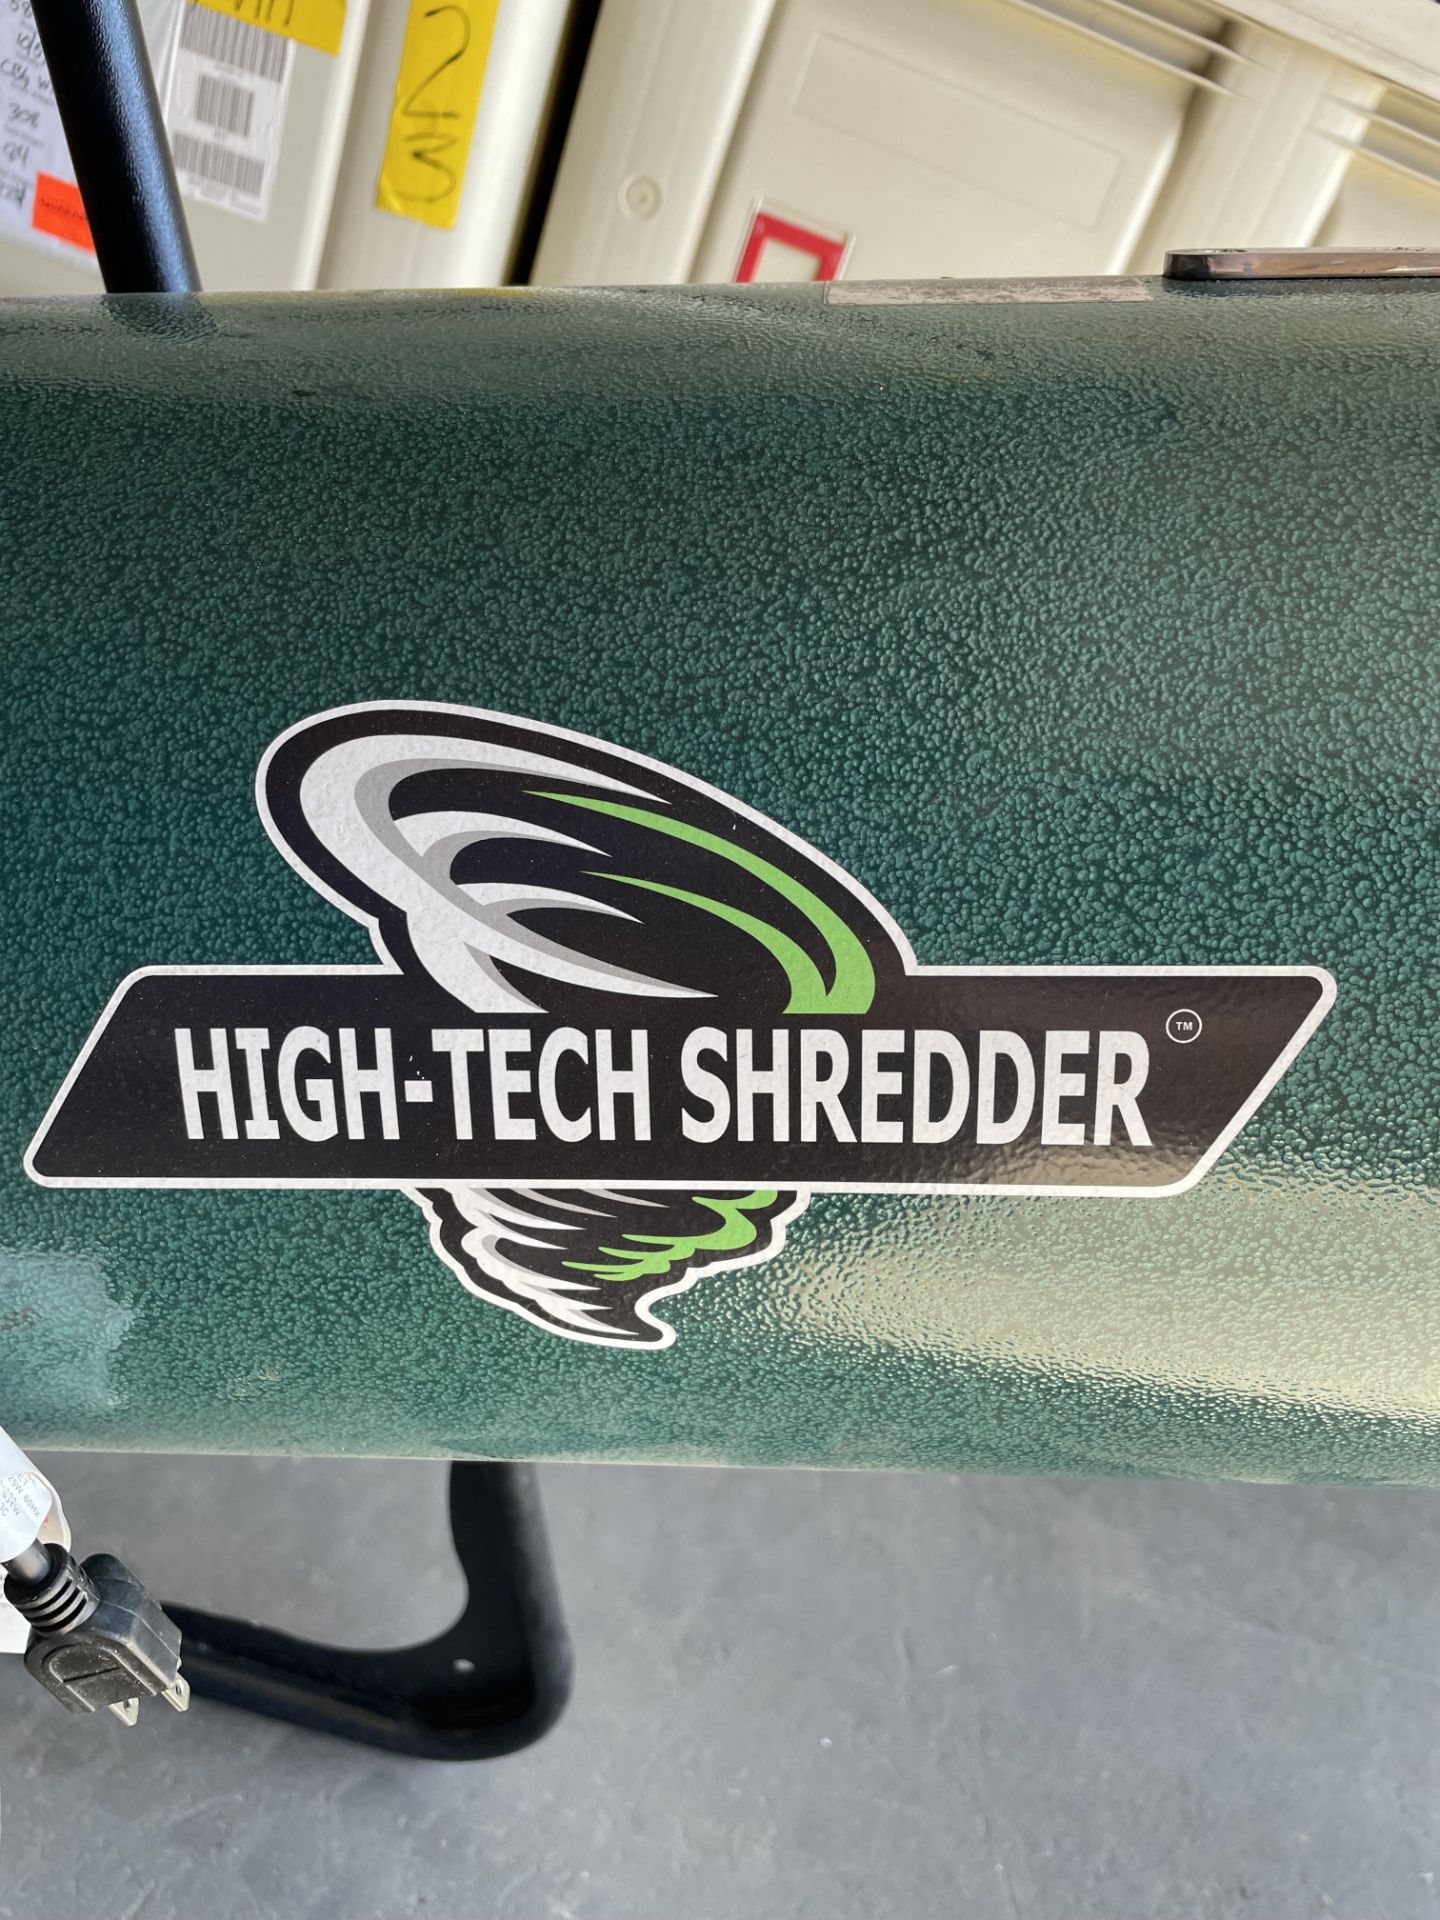 Used High-Tech 3 lb Shredder/Grinder. Model 110-CUP / HTSH110 - Image 3 of 4